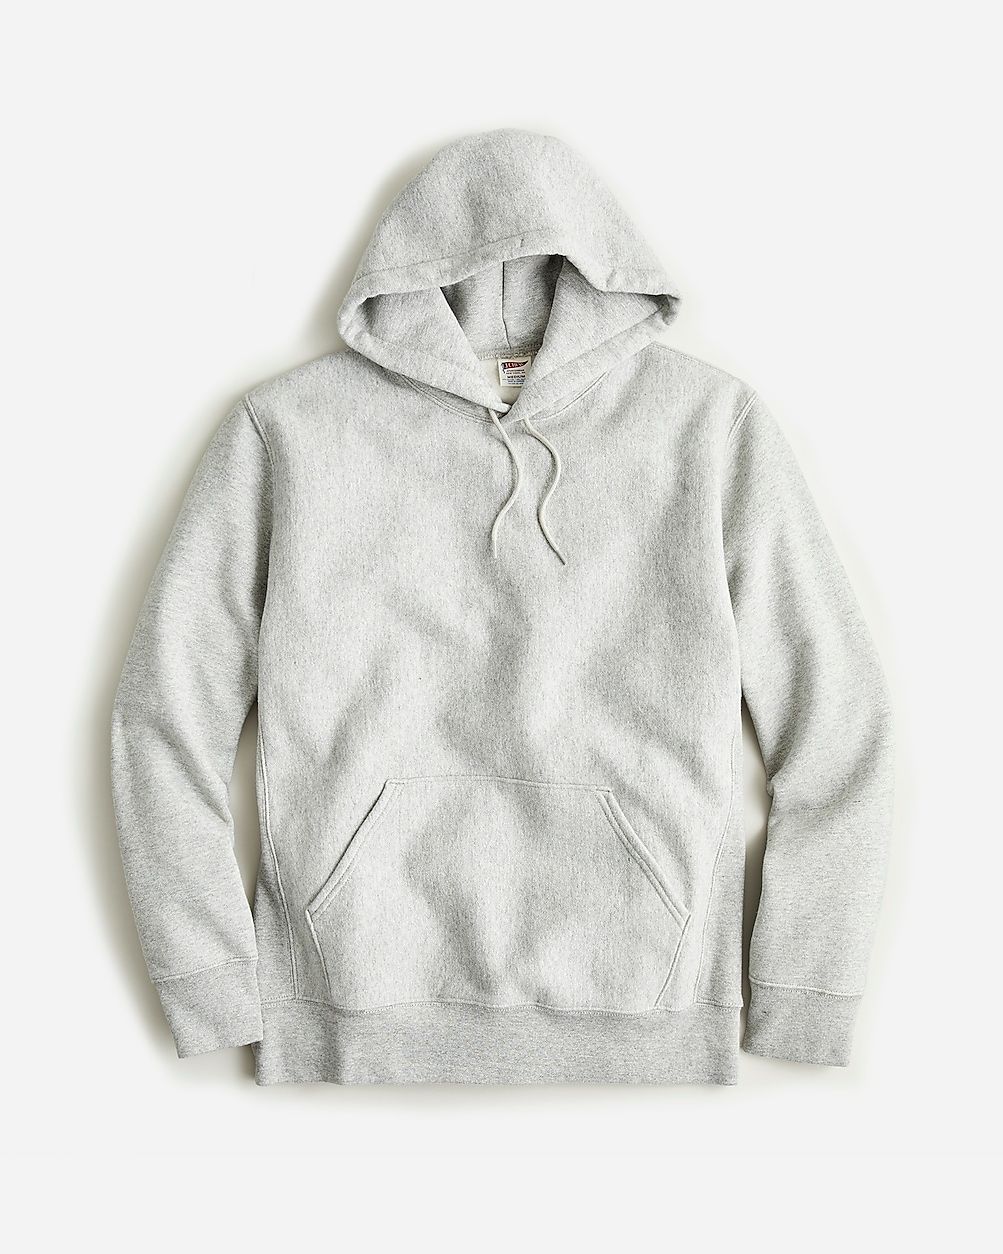 Heritage 14 oz. fleece hoodie | J.Crew US